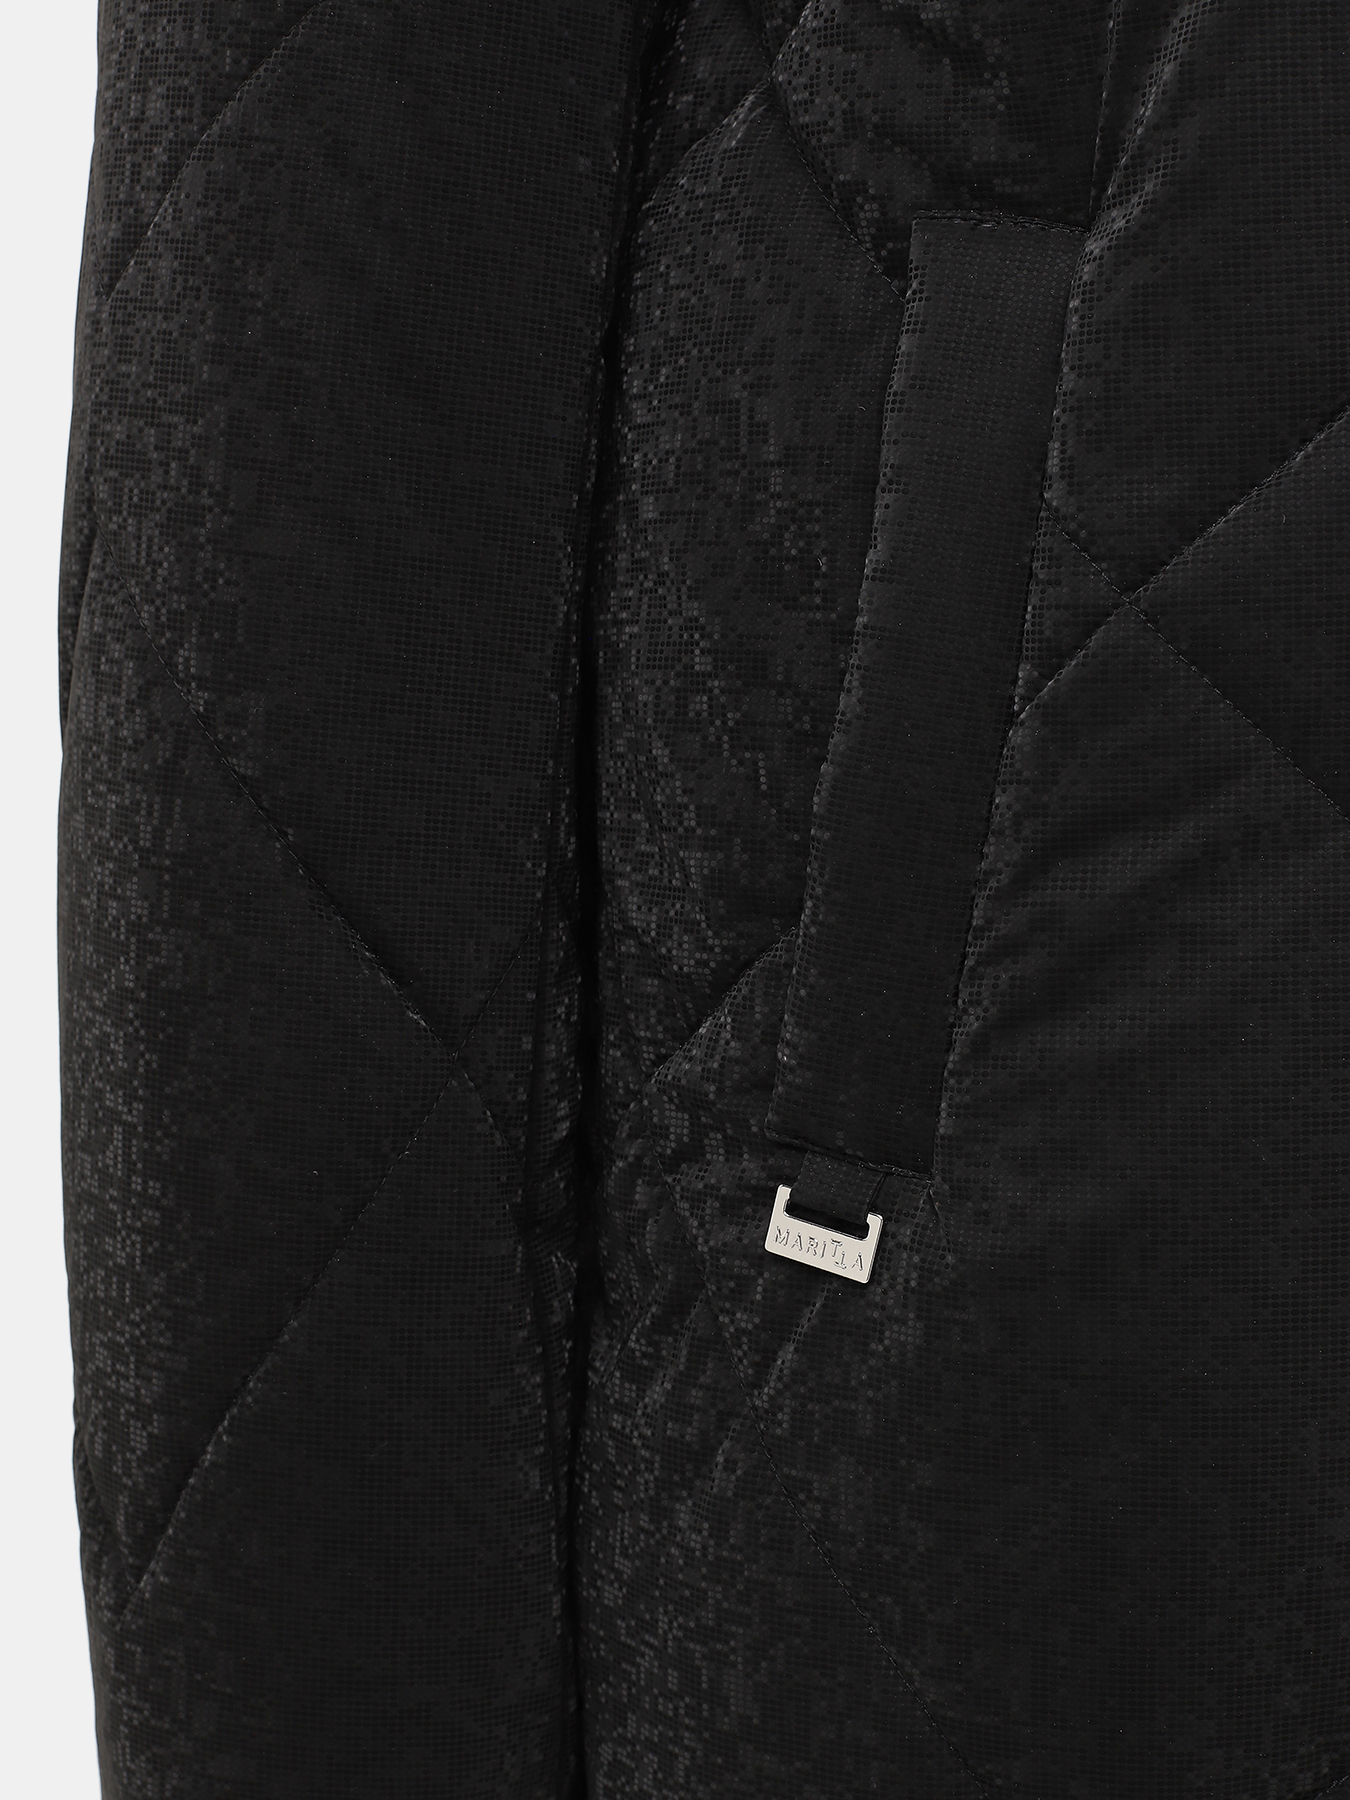 Пальто зимнее Maritta 433524-026, цвет черный, размер 50 - фото 5